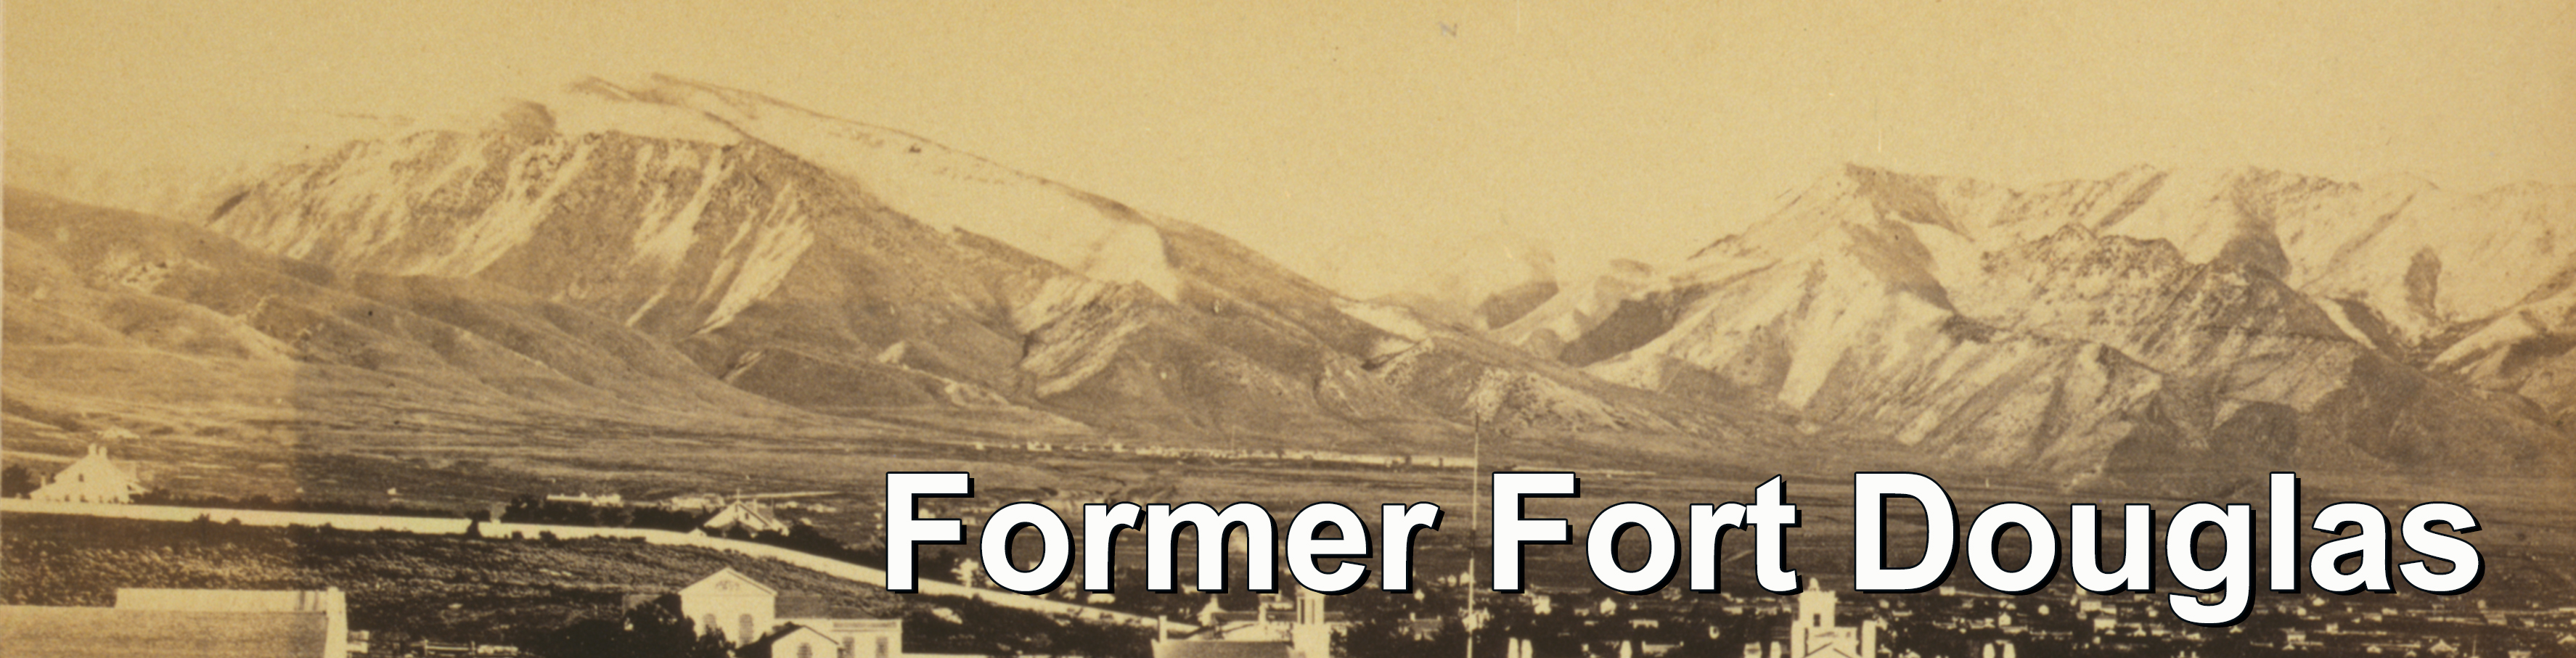 Banner - Former Fort Douglas Web page